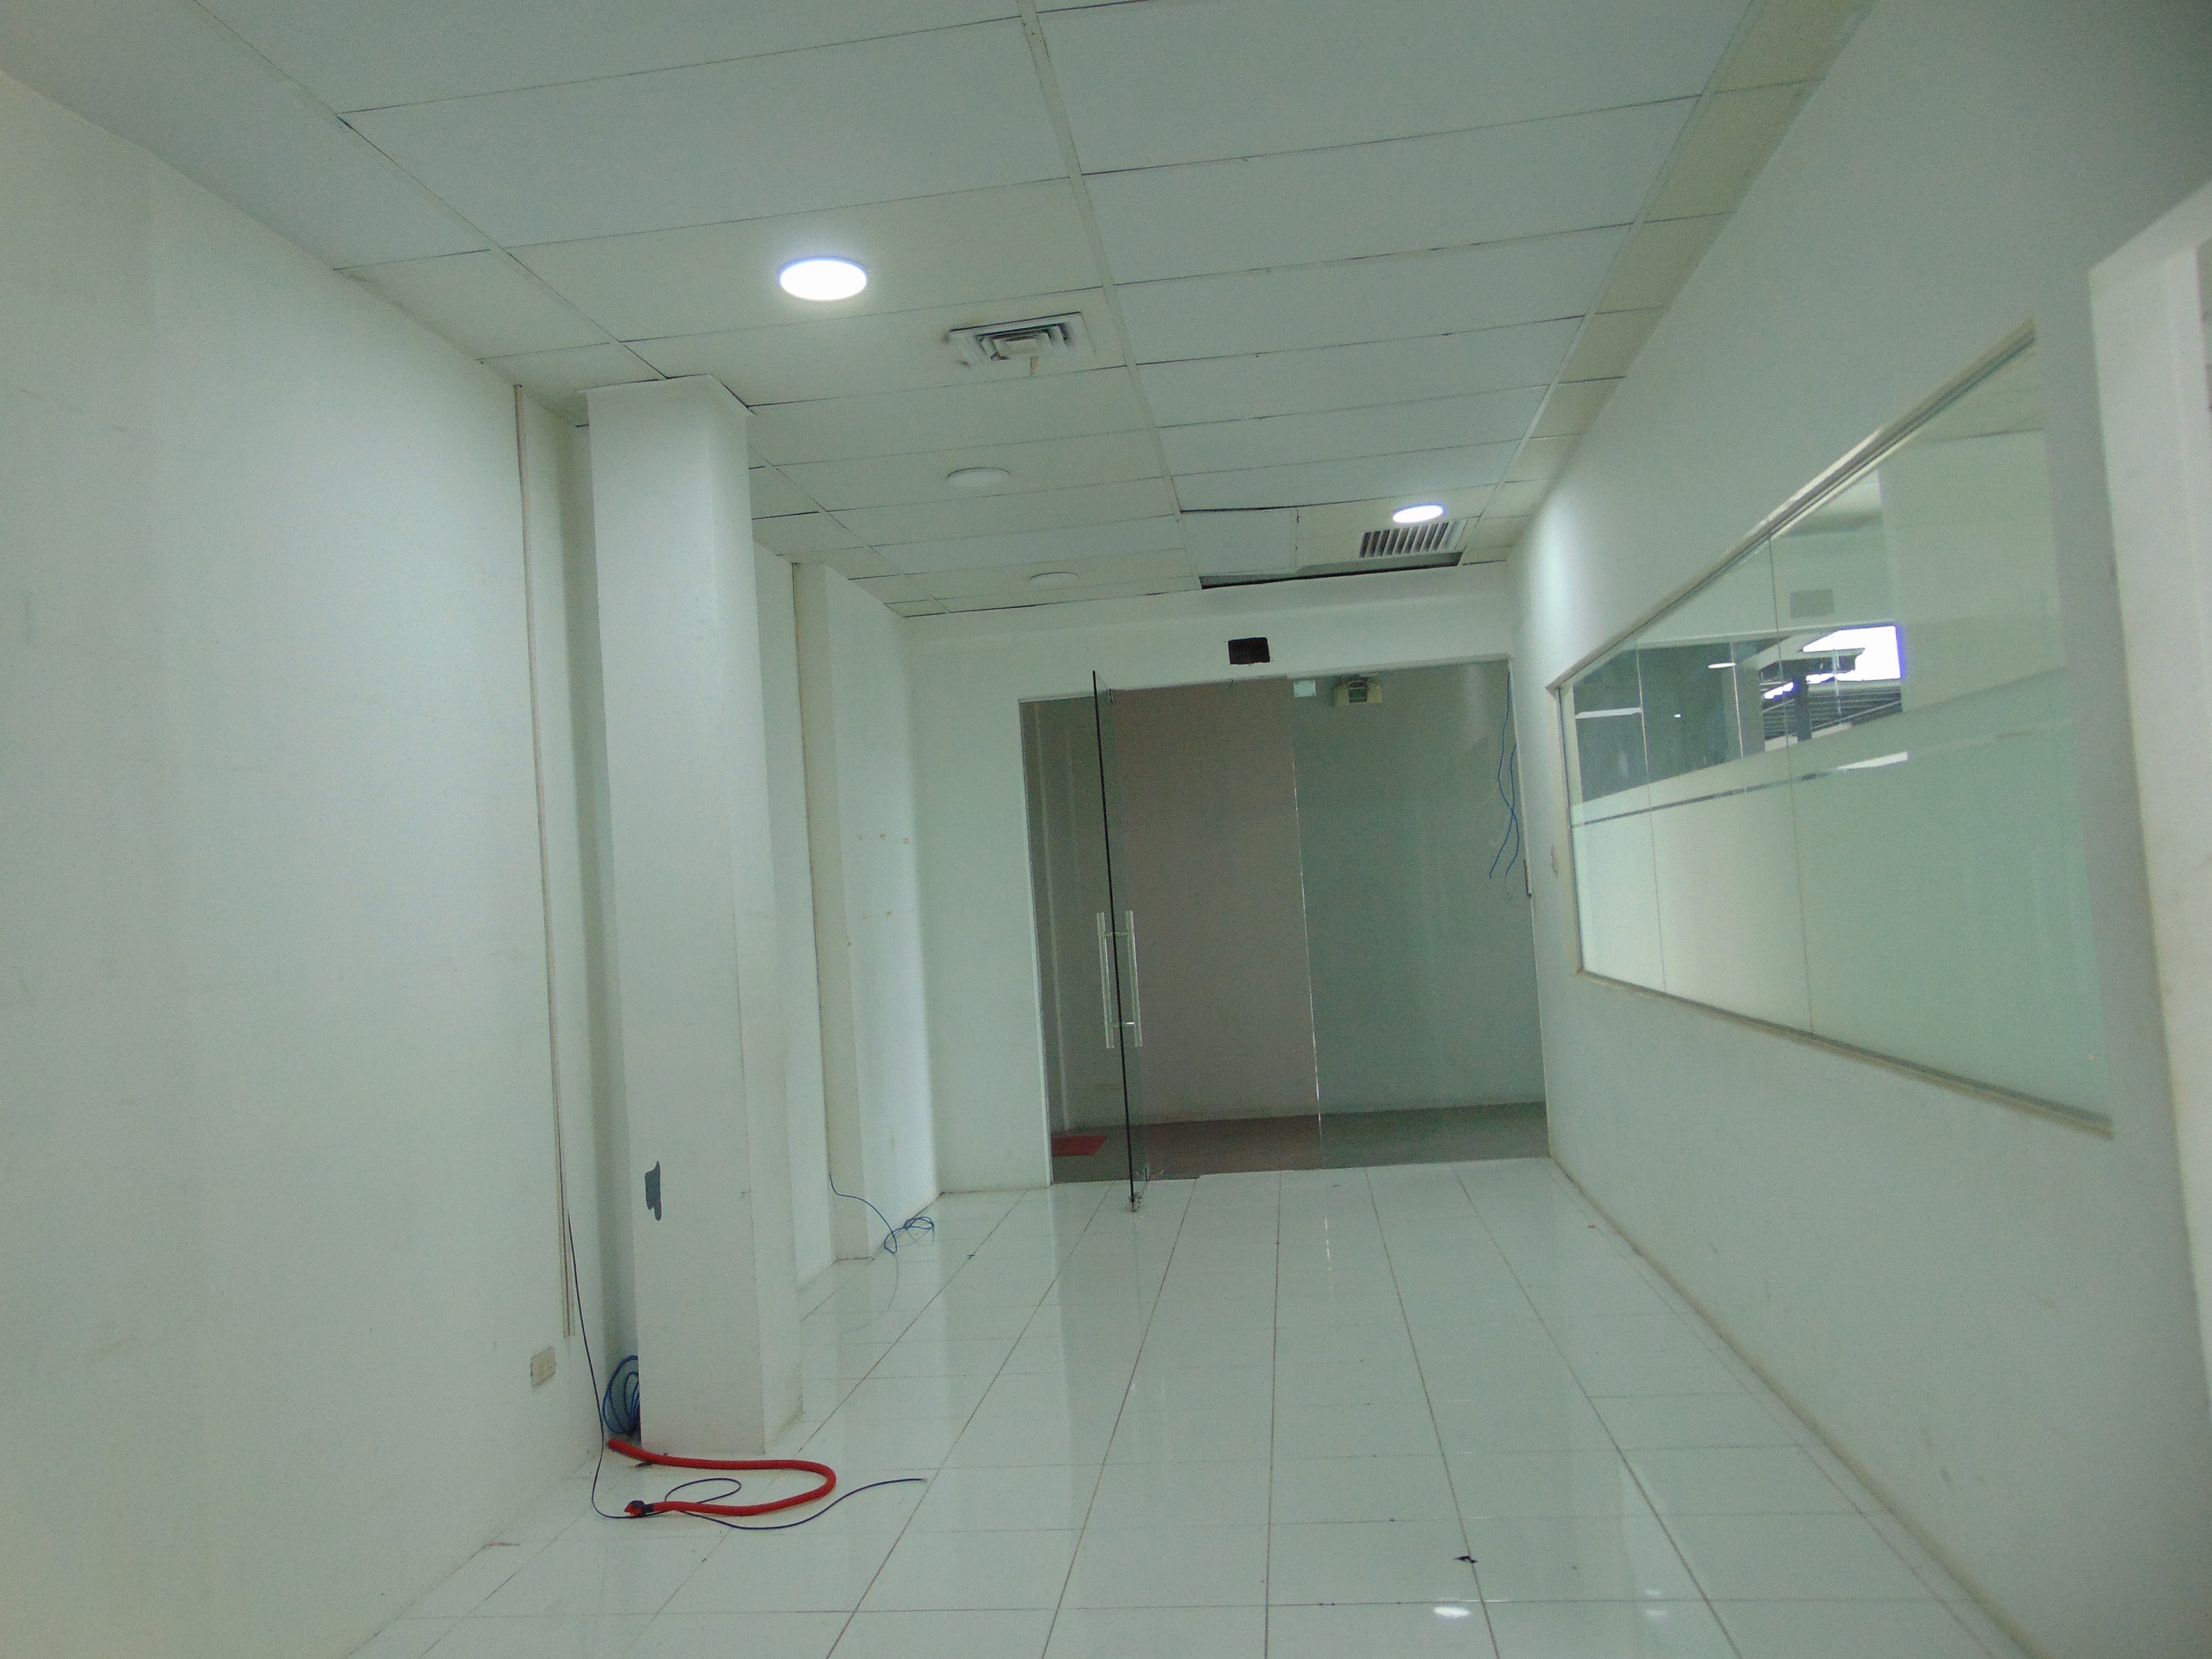 65-square-meter-office-space-located-in-mandaue-city-cebu